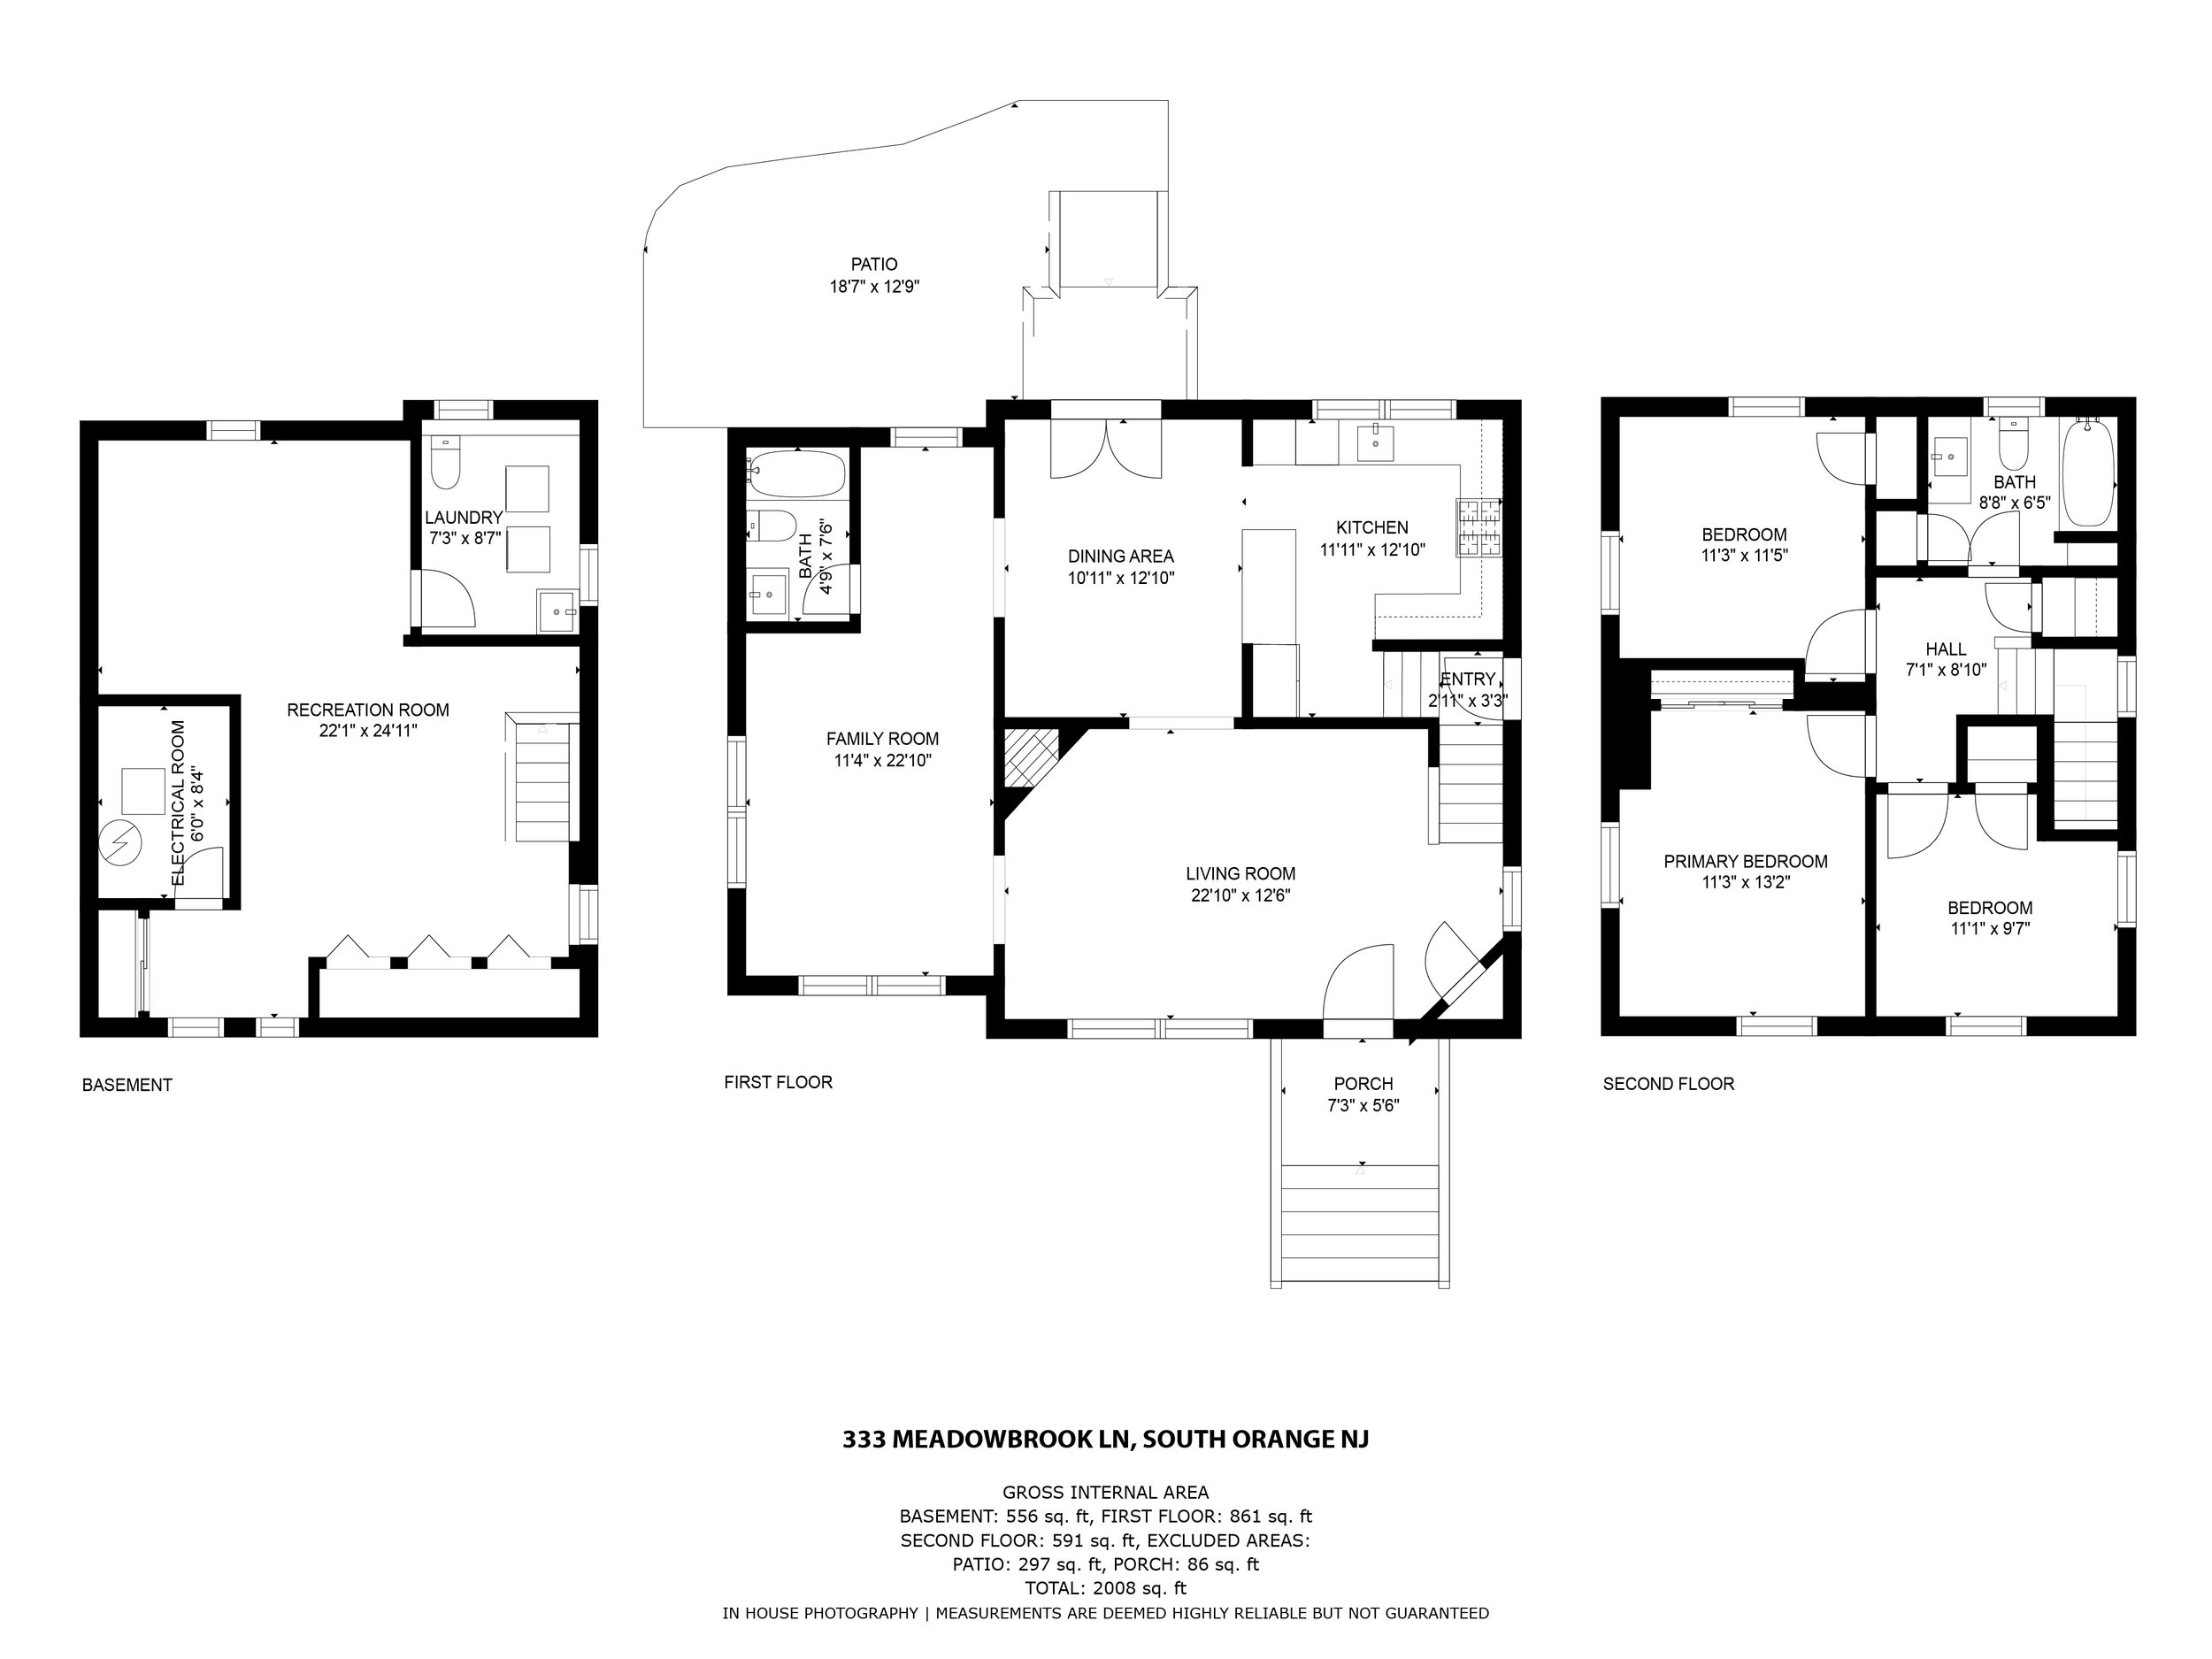 1-333 Meadowbrook floor plan.jpg